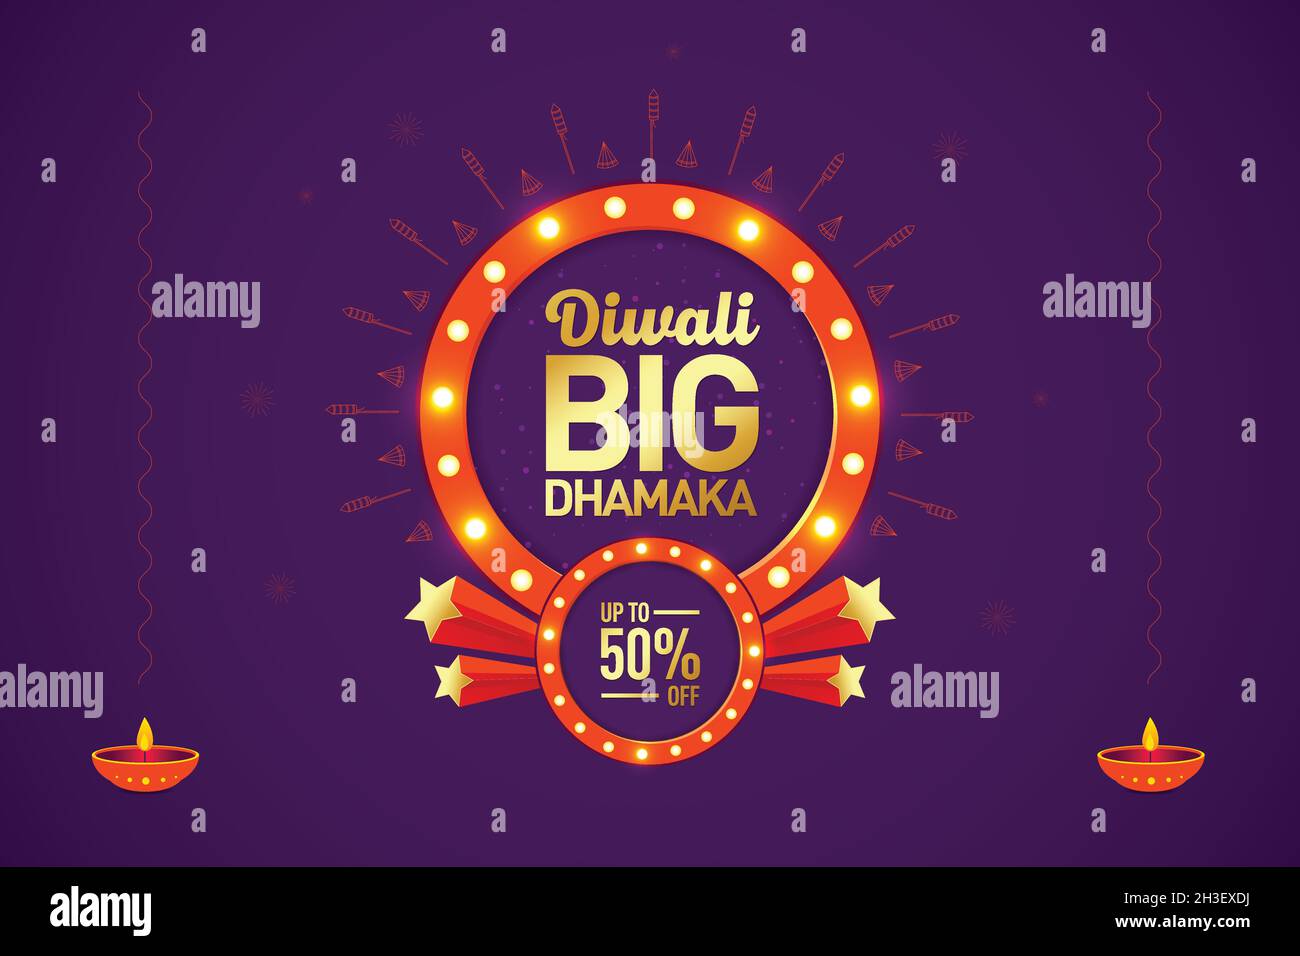 Diwali grande dhamaka vendita offerta banner unità logo con cracker e luci sfondo celebrazione, festa indiana della luce, offerta vendita, Logo design. Illustrazione Vettoriale